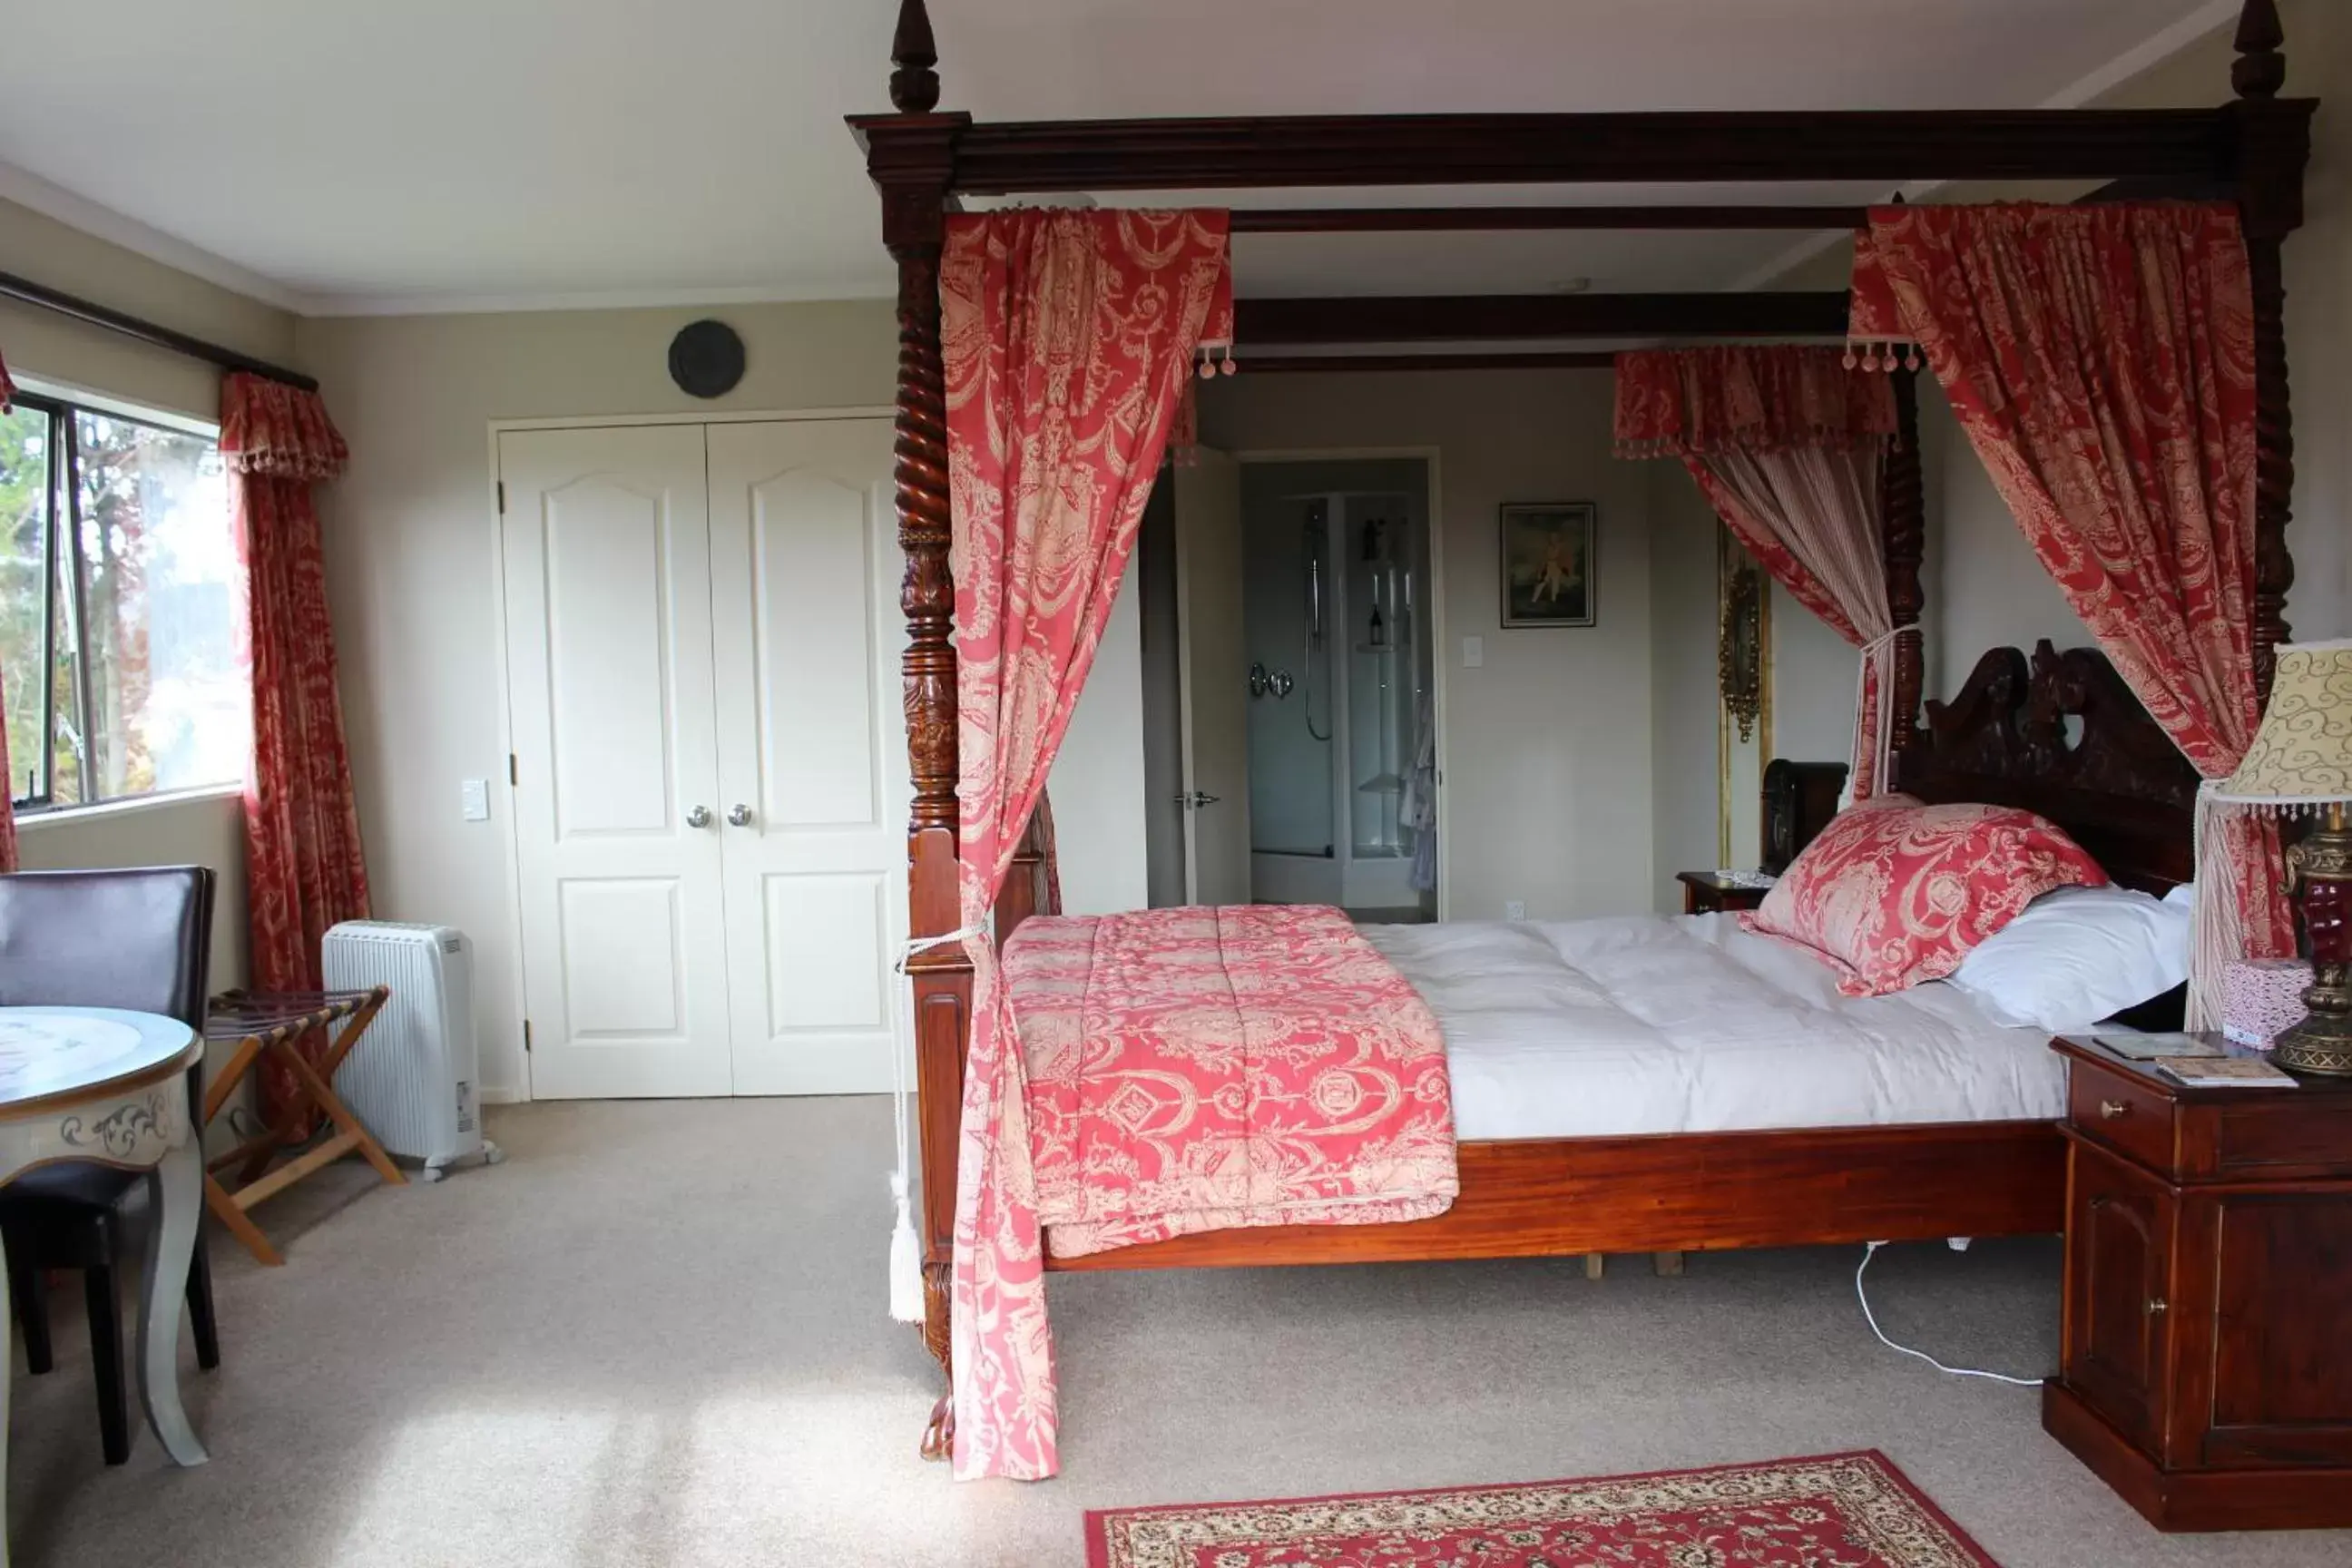 Bedroom, Room Photo in Tudor Manor Bed & Breakfast